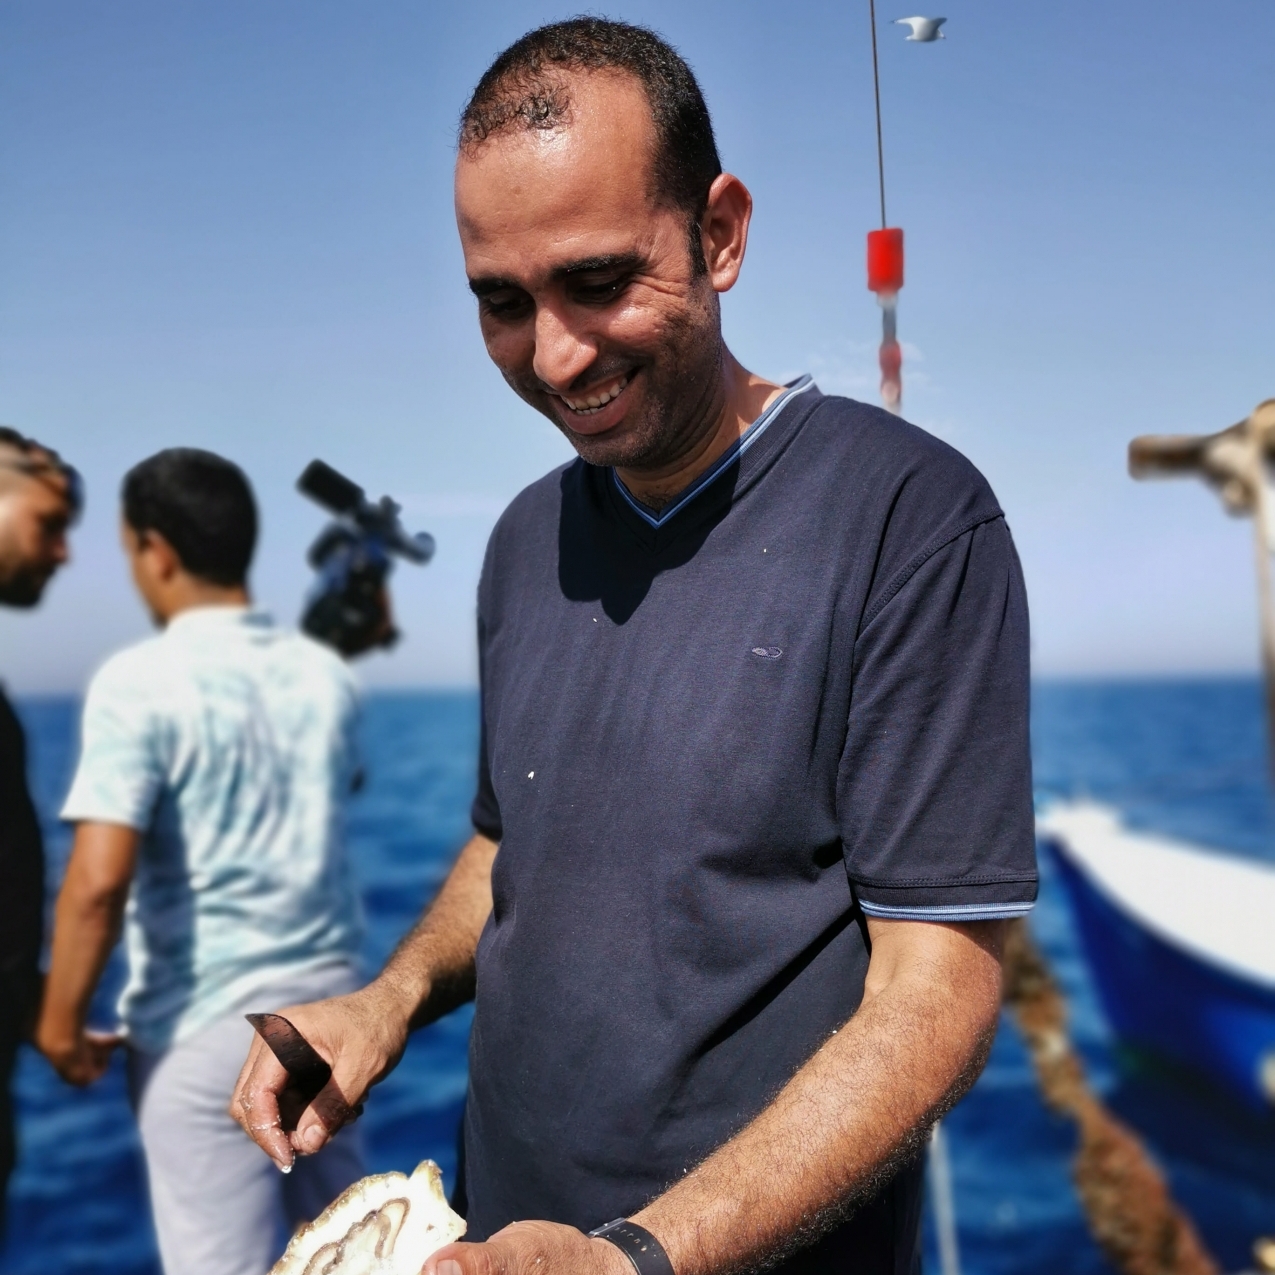 Un pêcheur, membre de la coopérative. Ils sont, en tout, 34 pêcheurs à travailler dans la coopérative Al Amal, qui exploite l'élevage à Ras El Ma.
